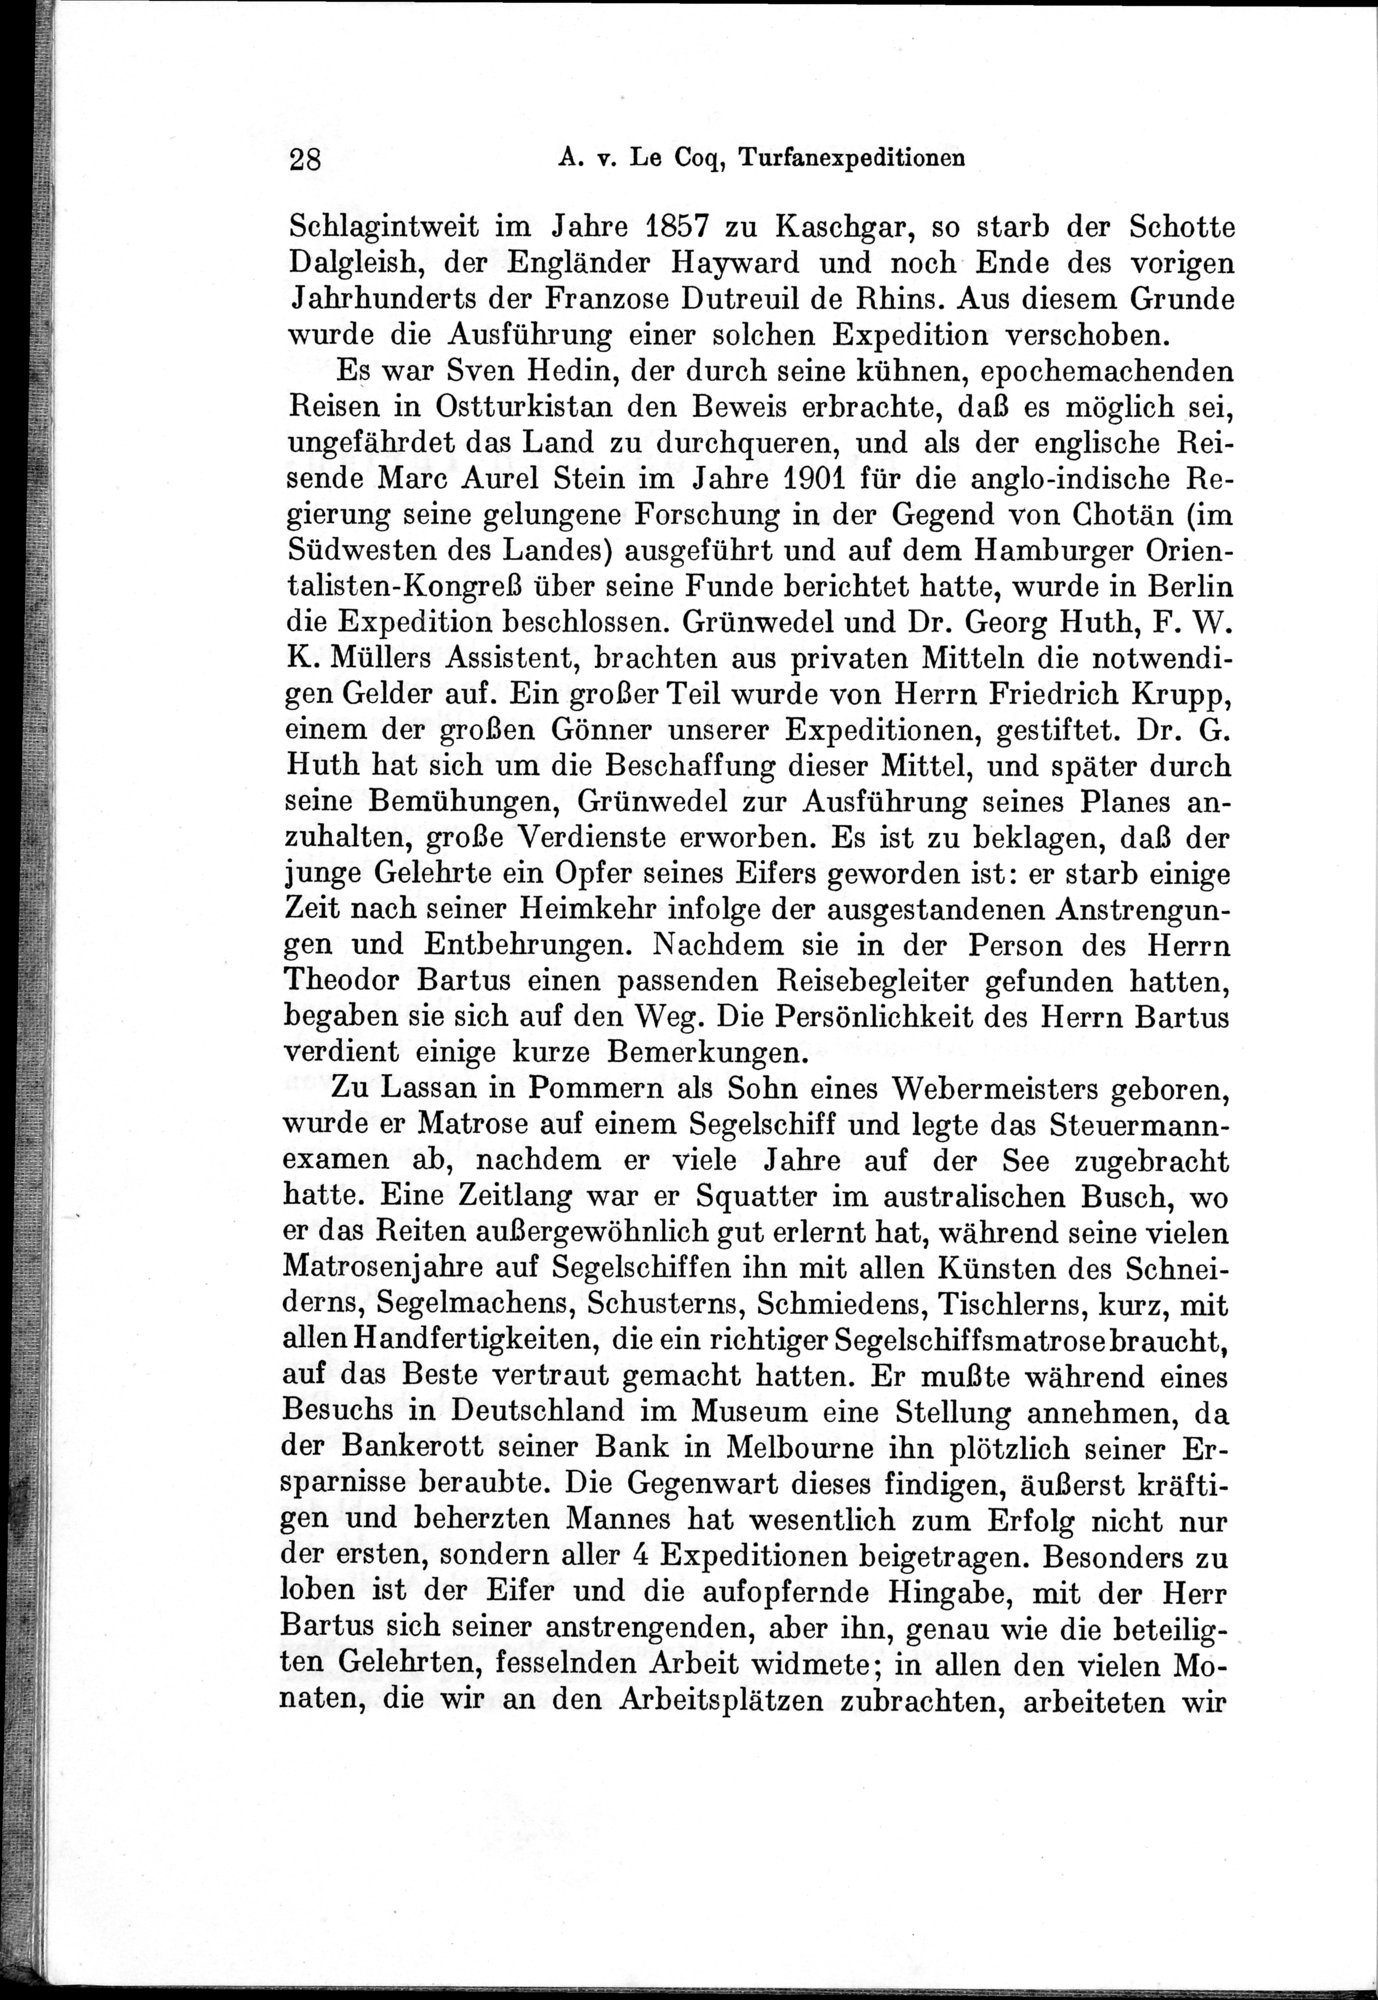 Auf Hellas Spuren in Ostturkistan : vol.1 / Page 48 (Grayscale High Resolution Image)